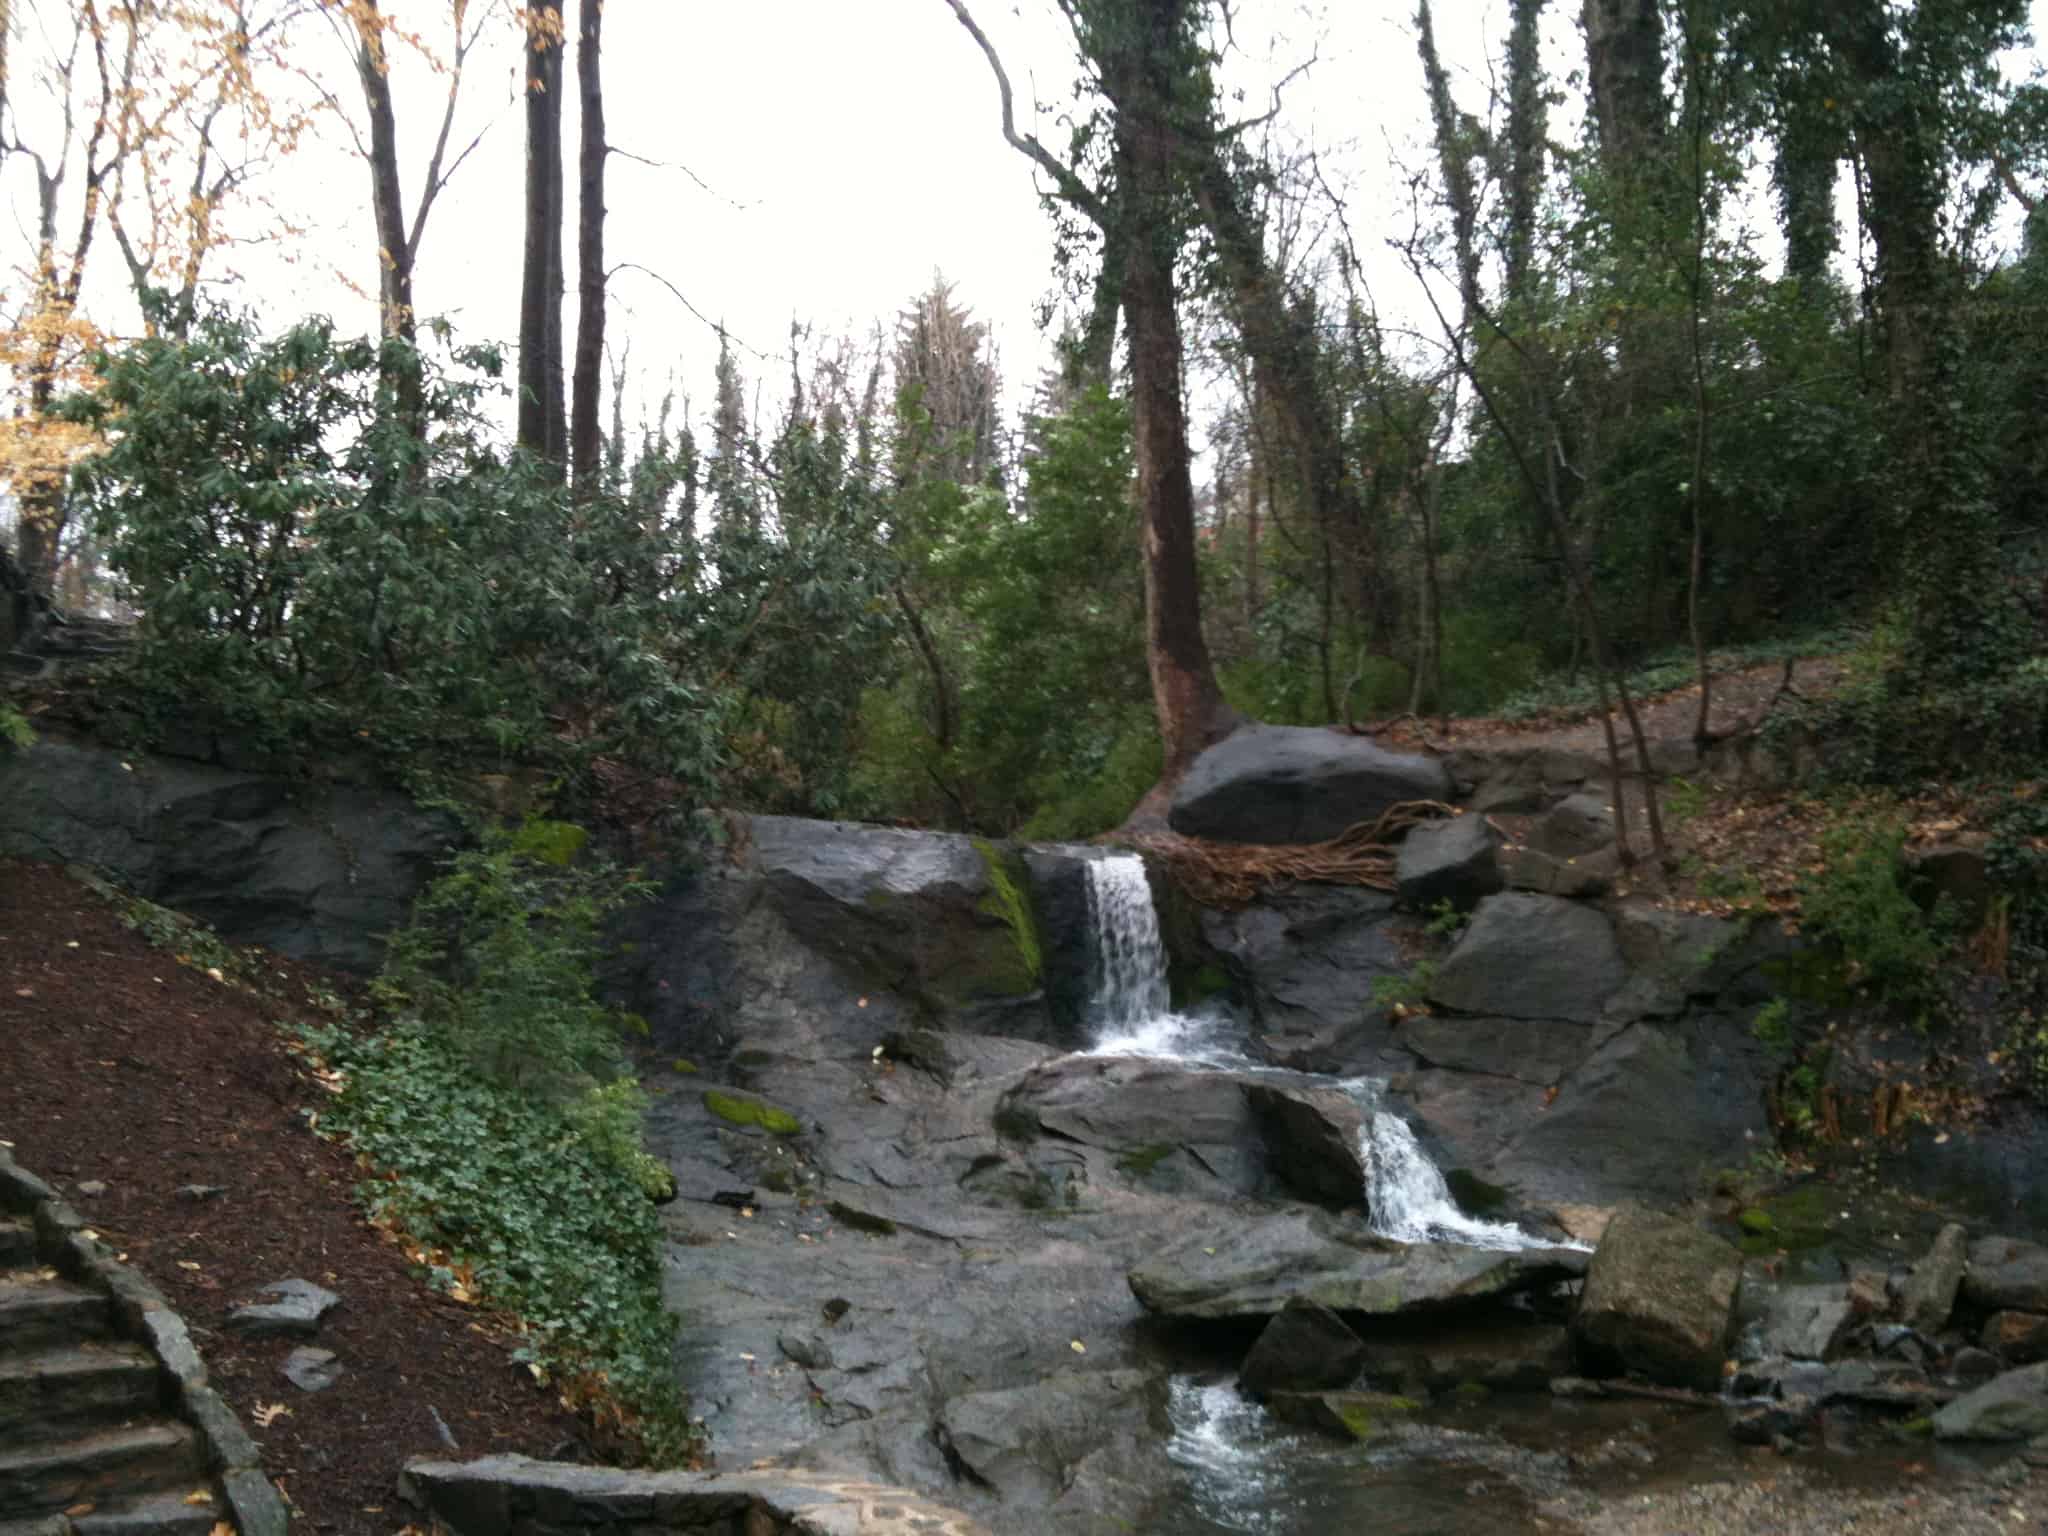 Landscape Design for a Greenville, SC, Public Park: Part One